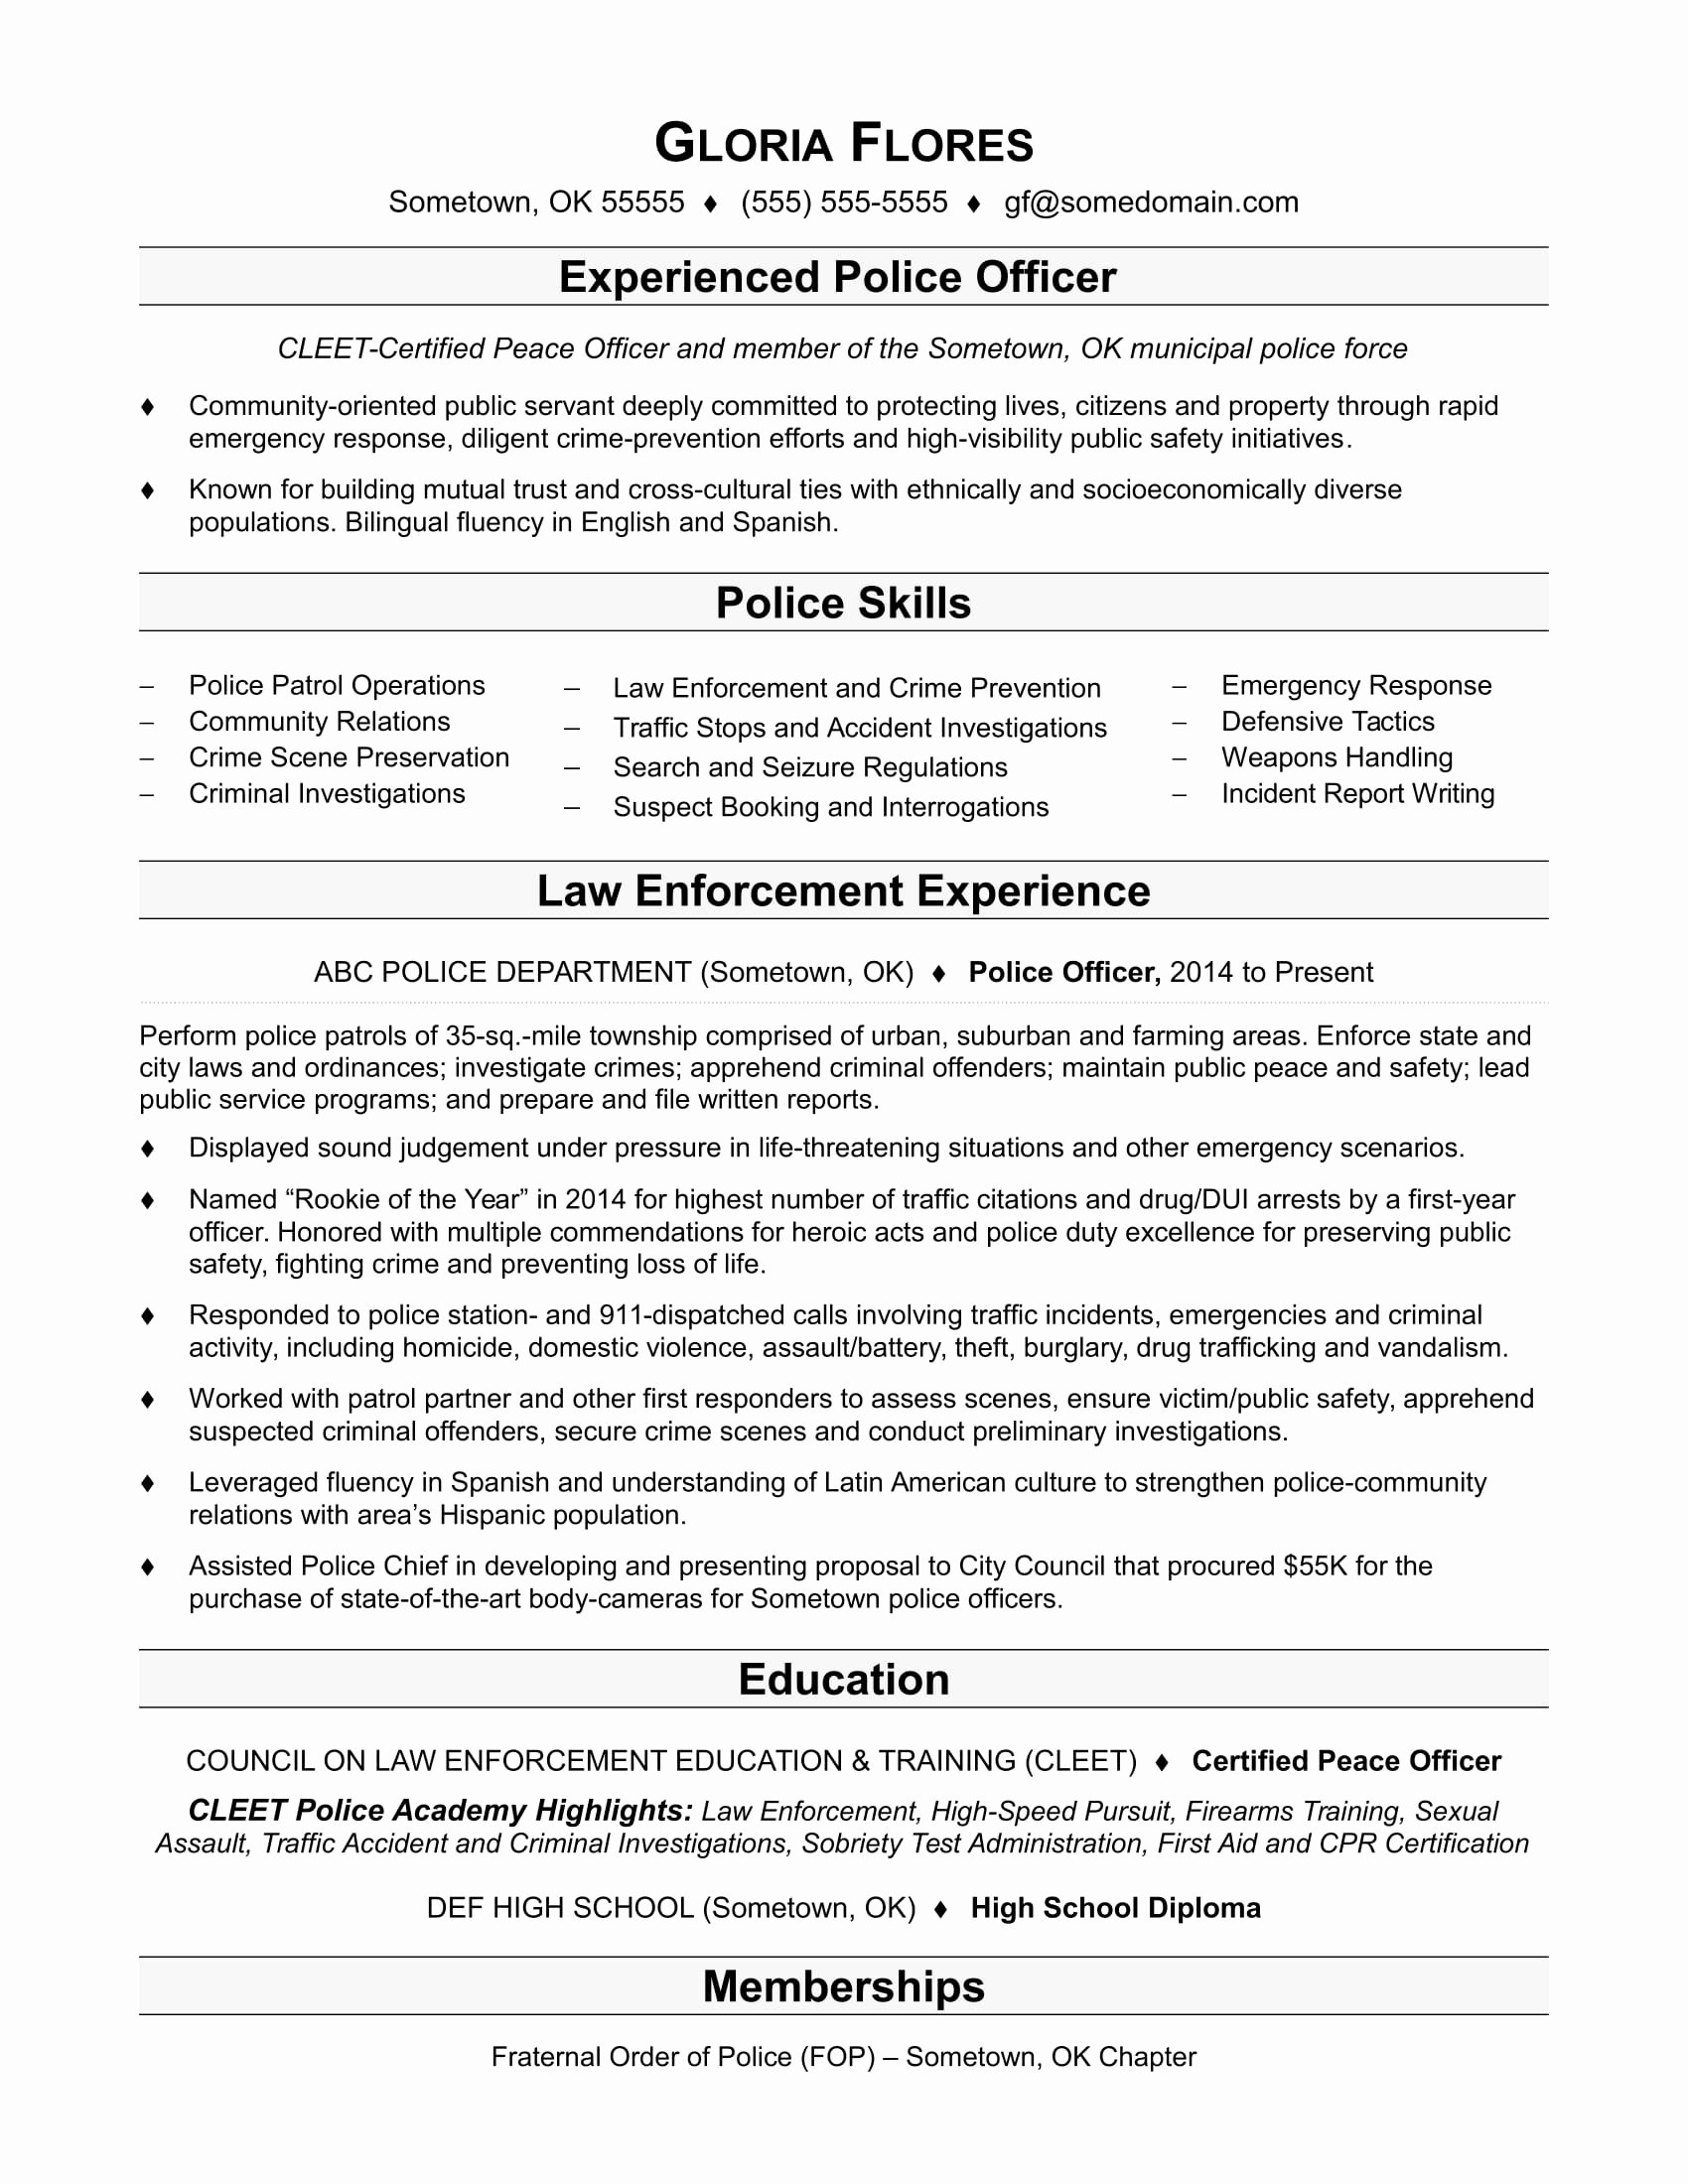 Police Ficer Resume Sample